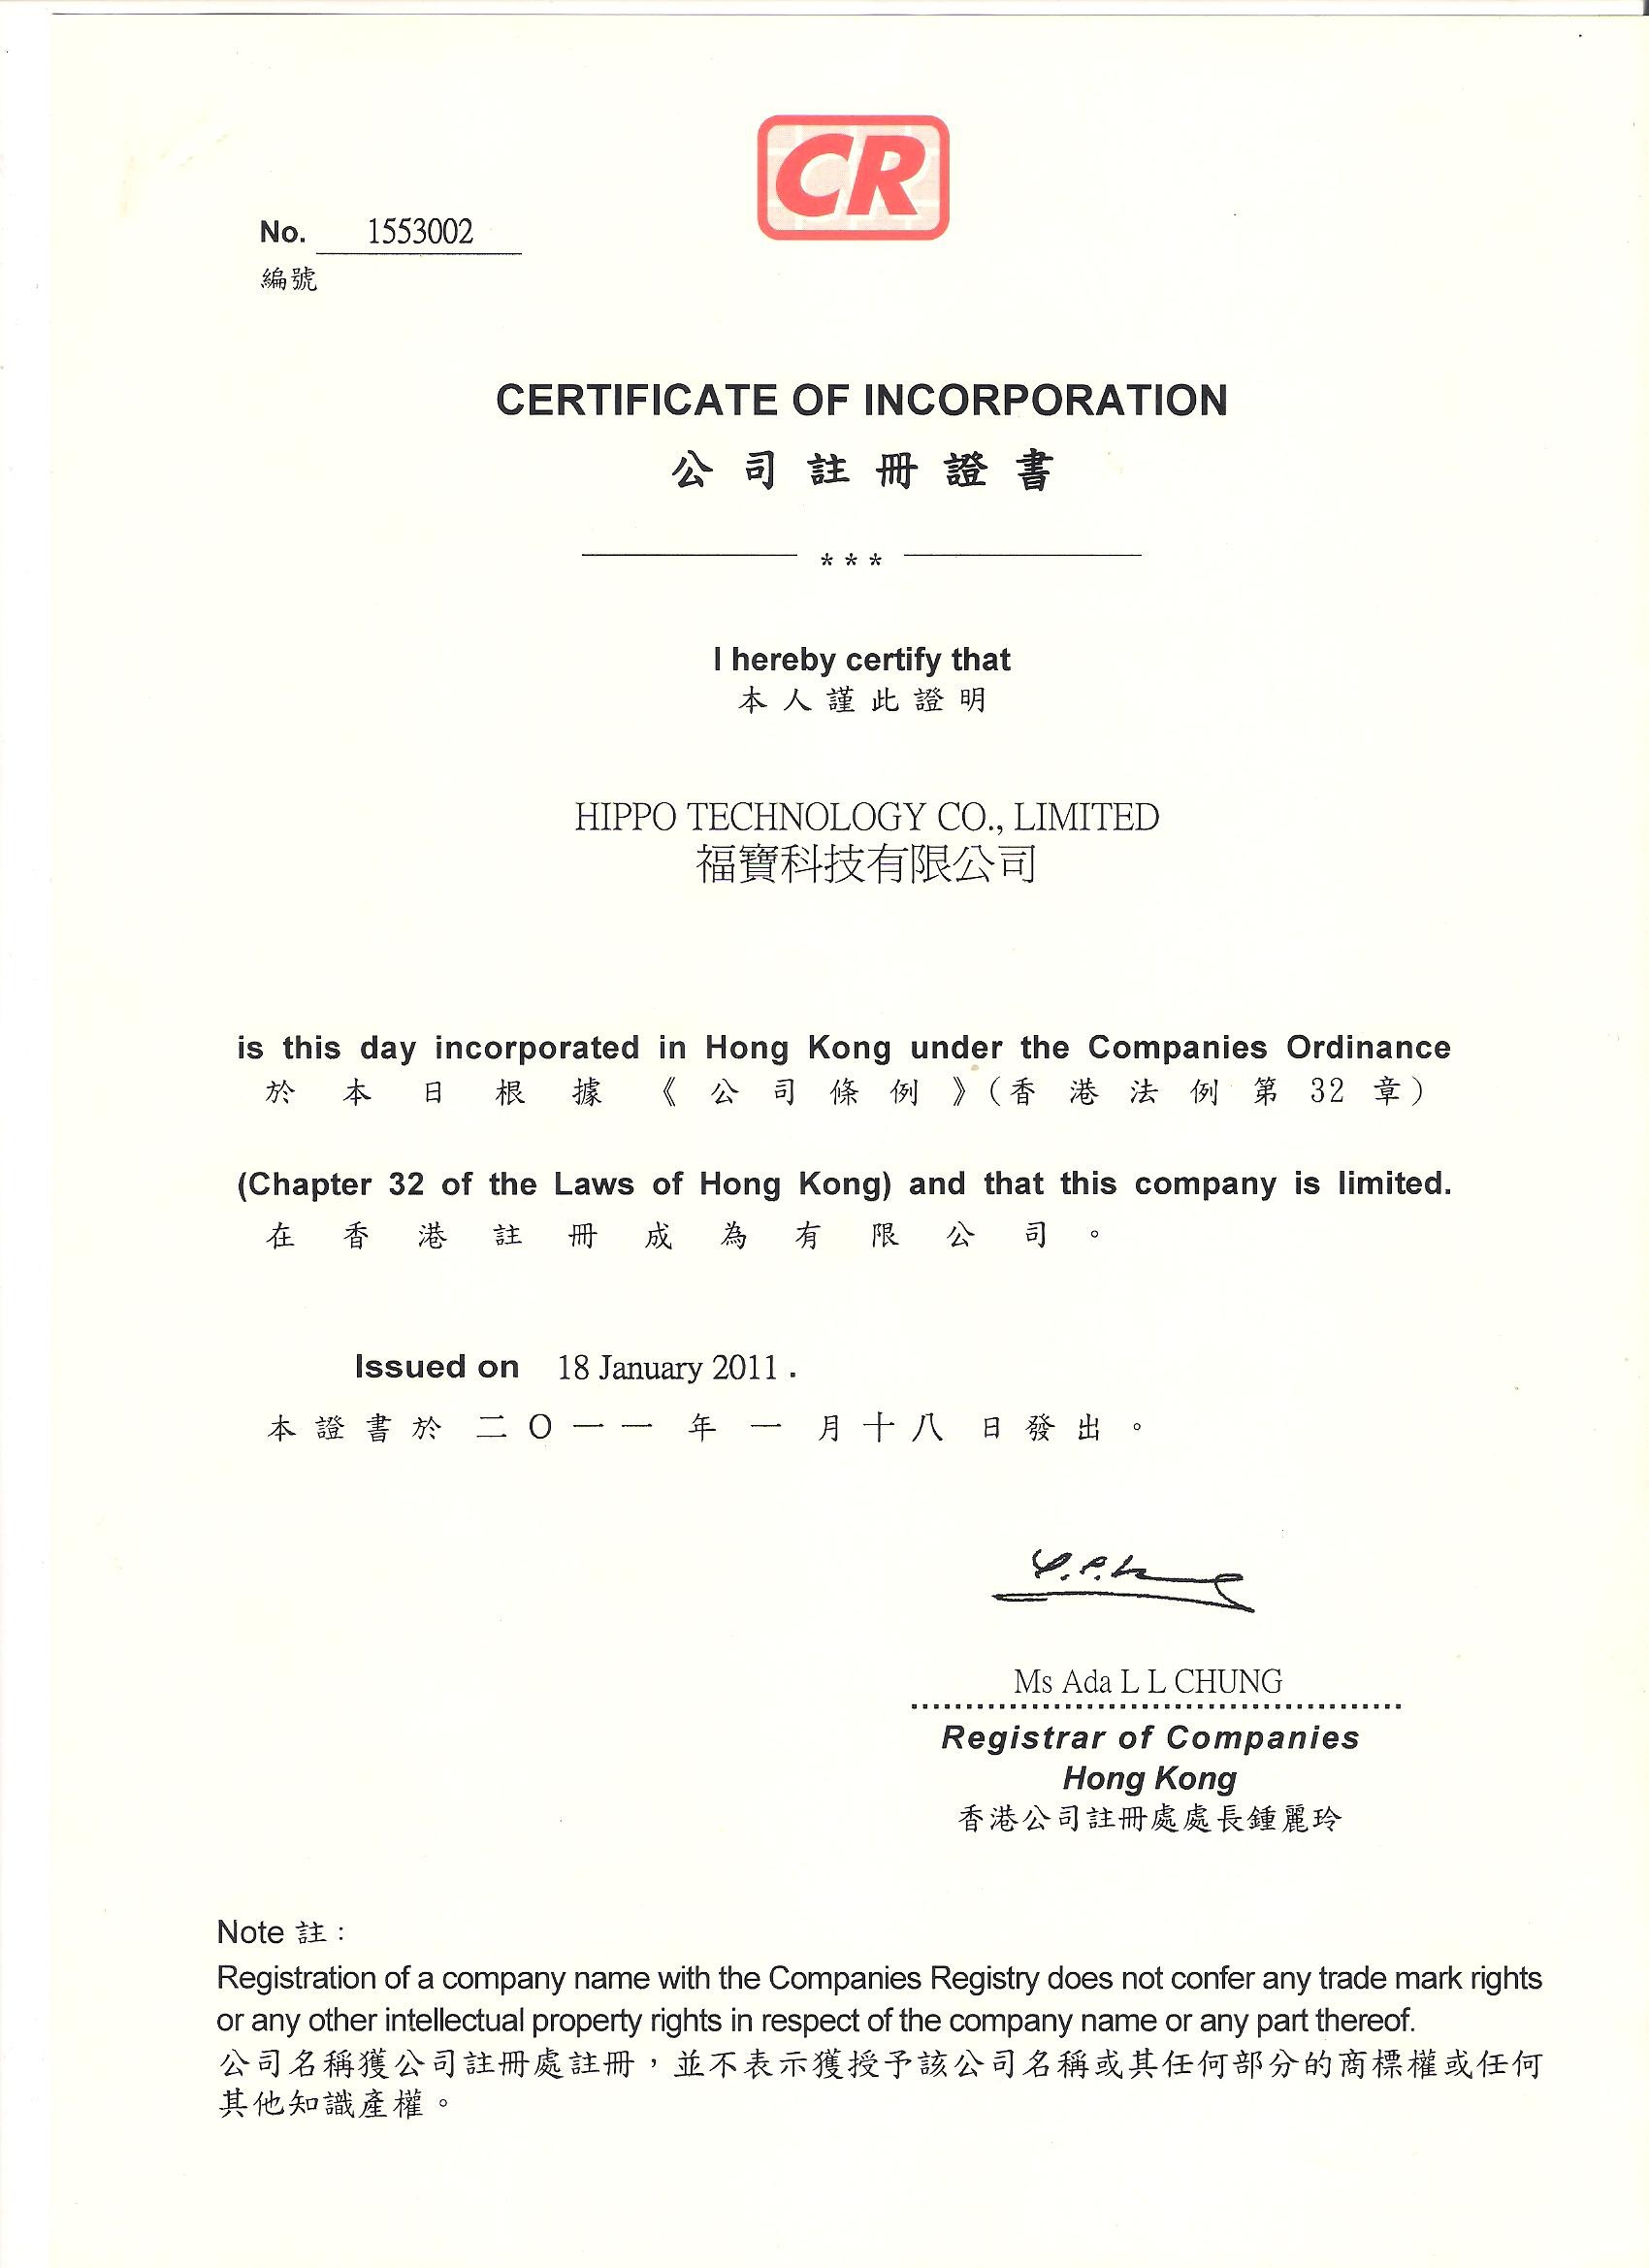 ประเทศจีน Hippo Technology Co.,LTD รับรอง